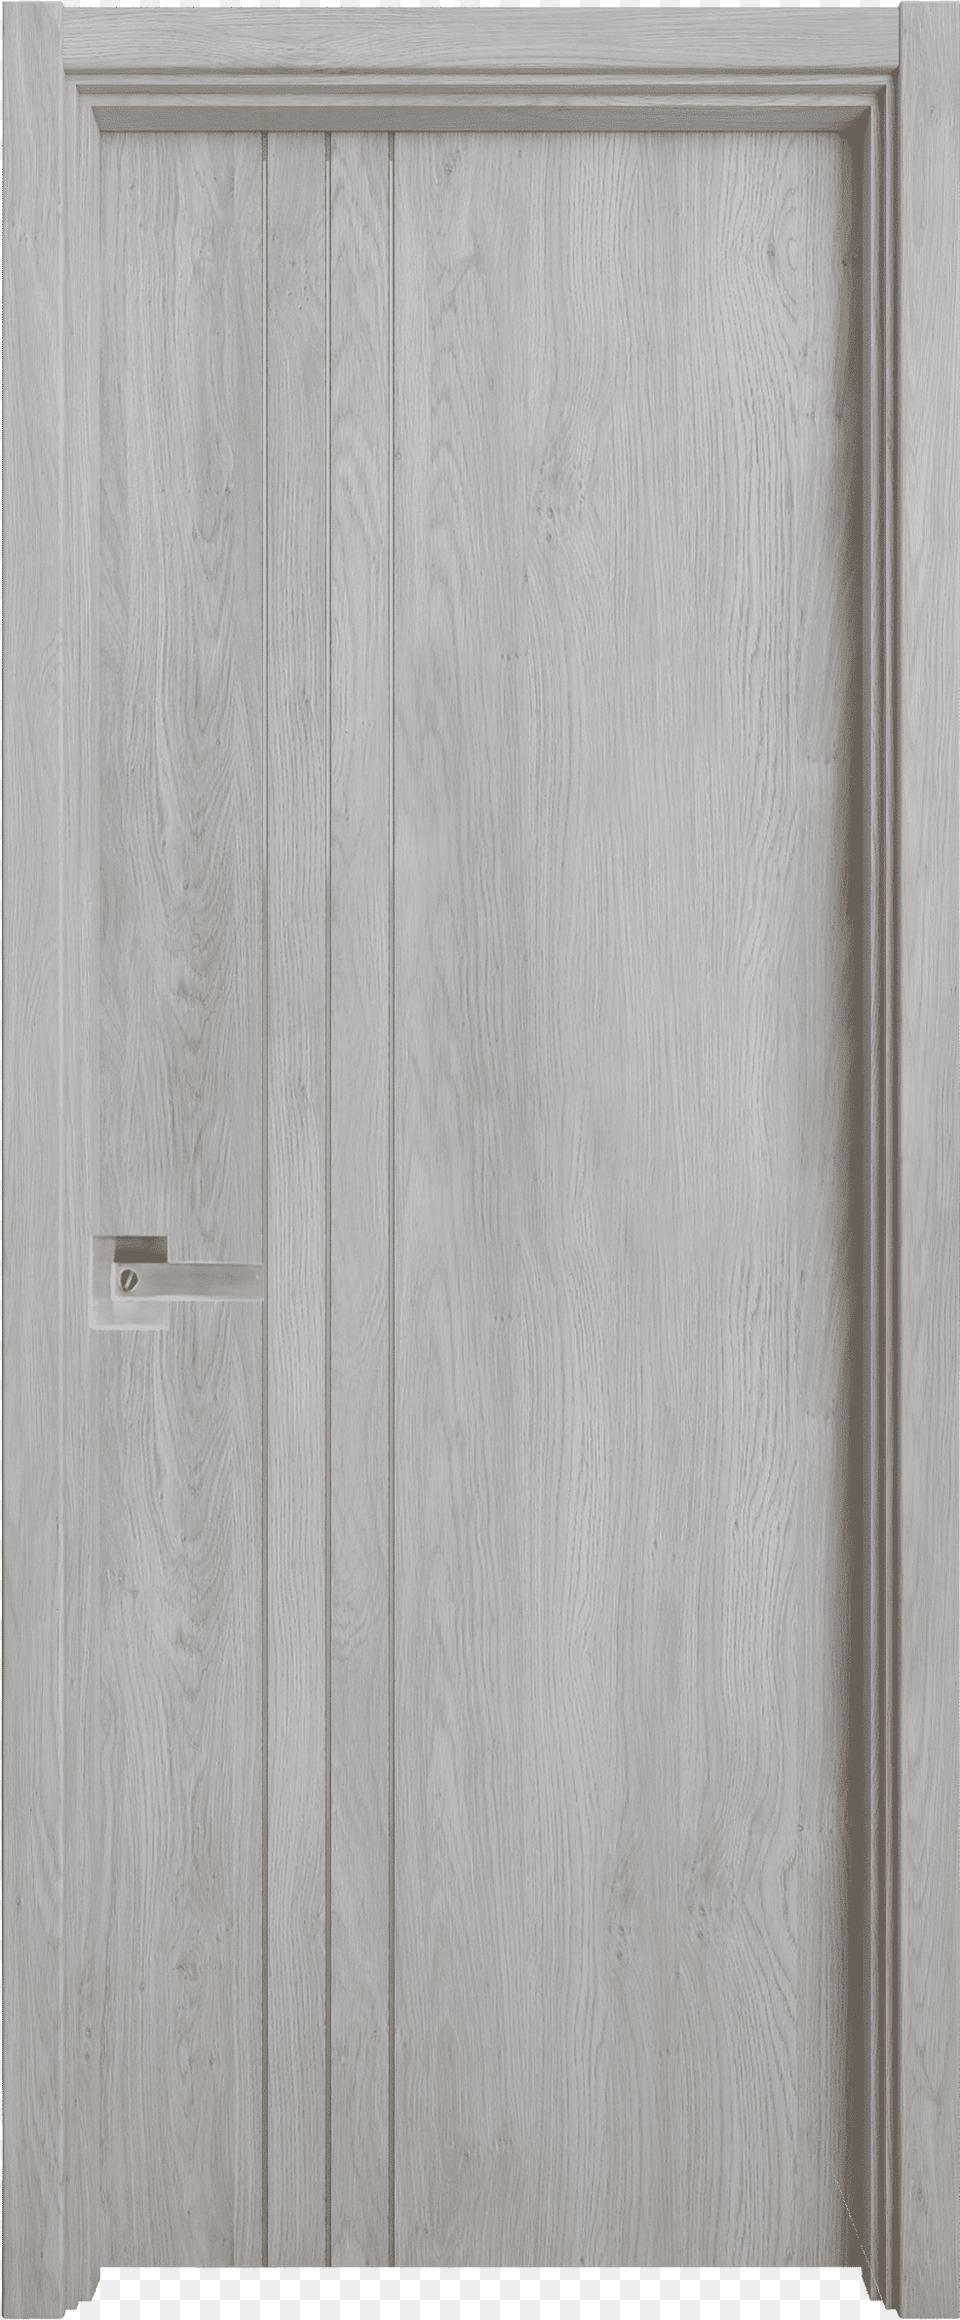 Home Door, Indoors, Wood, Interior Design, Plywood Png Image